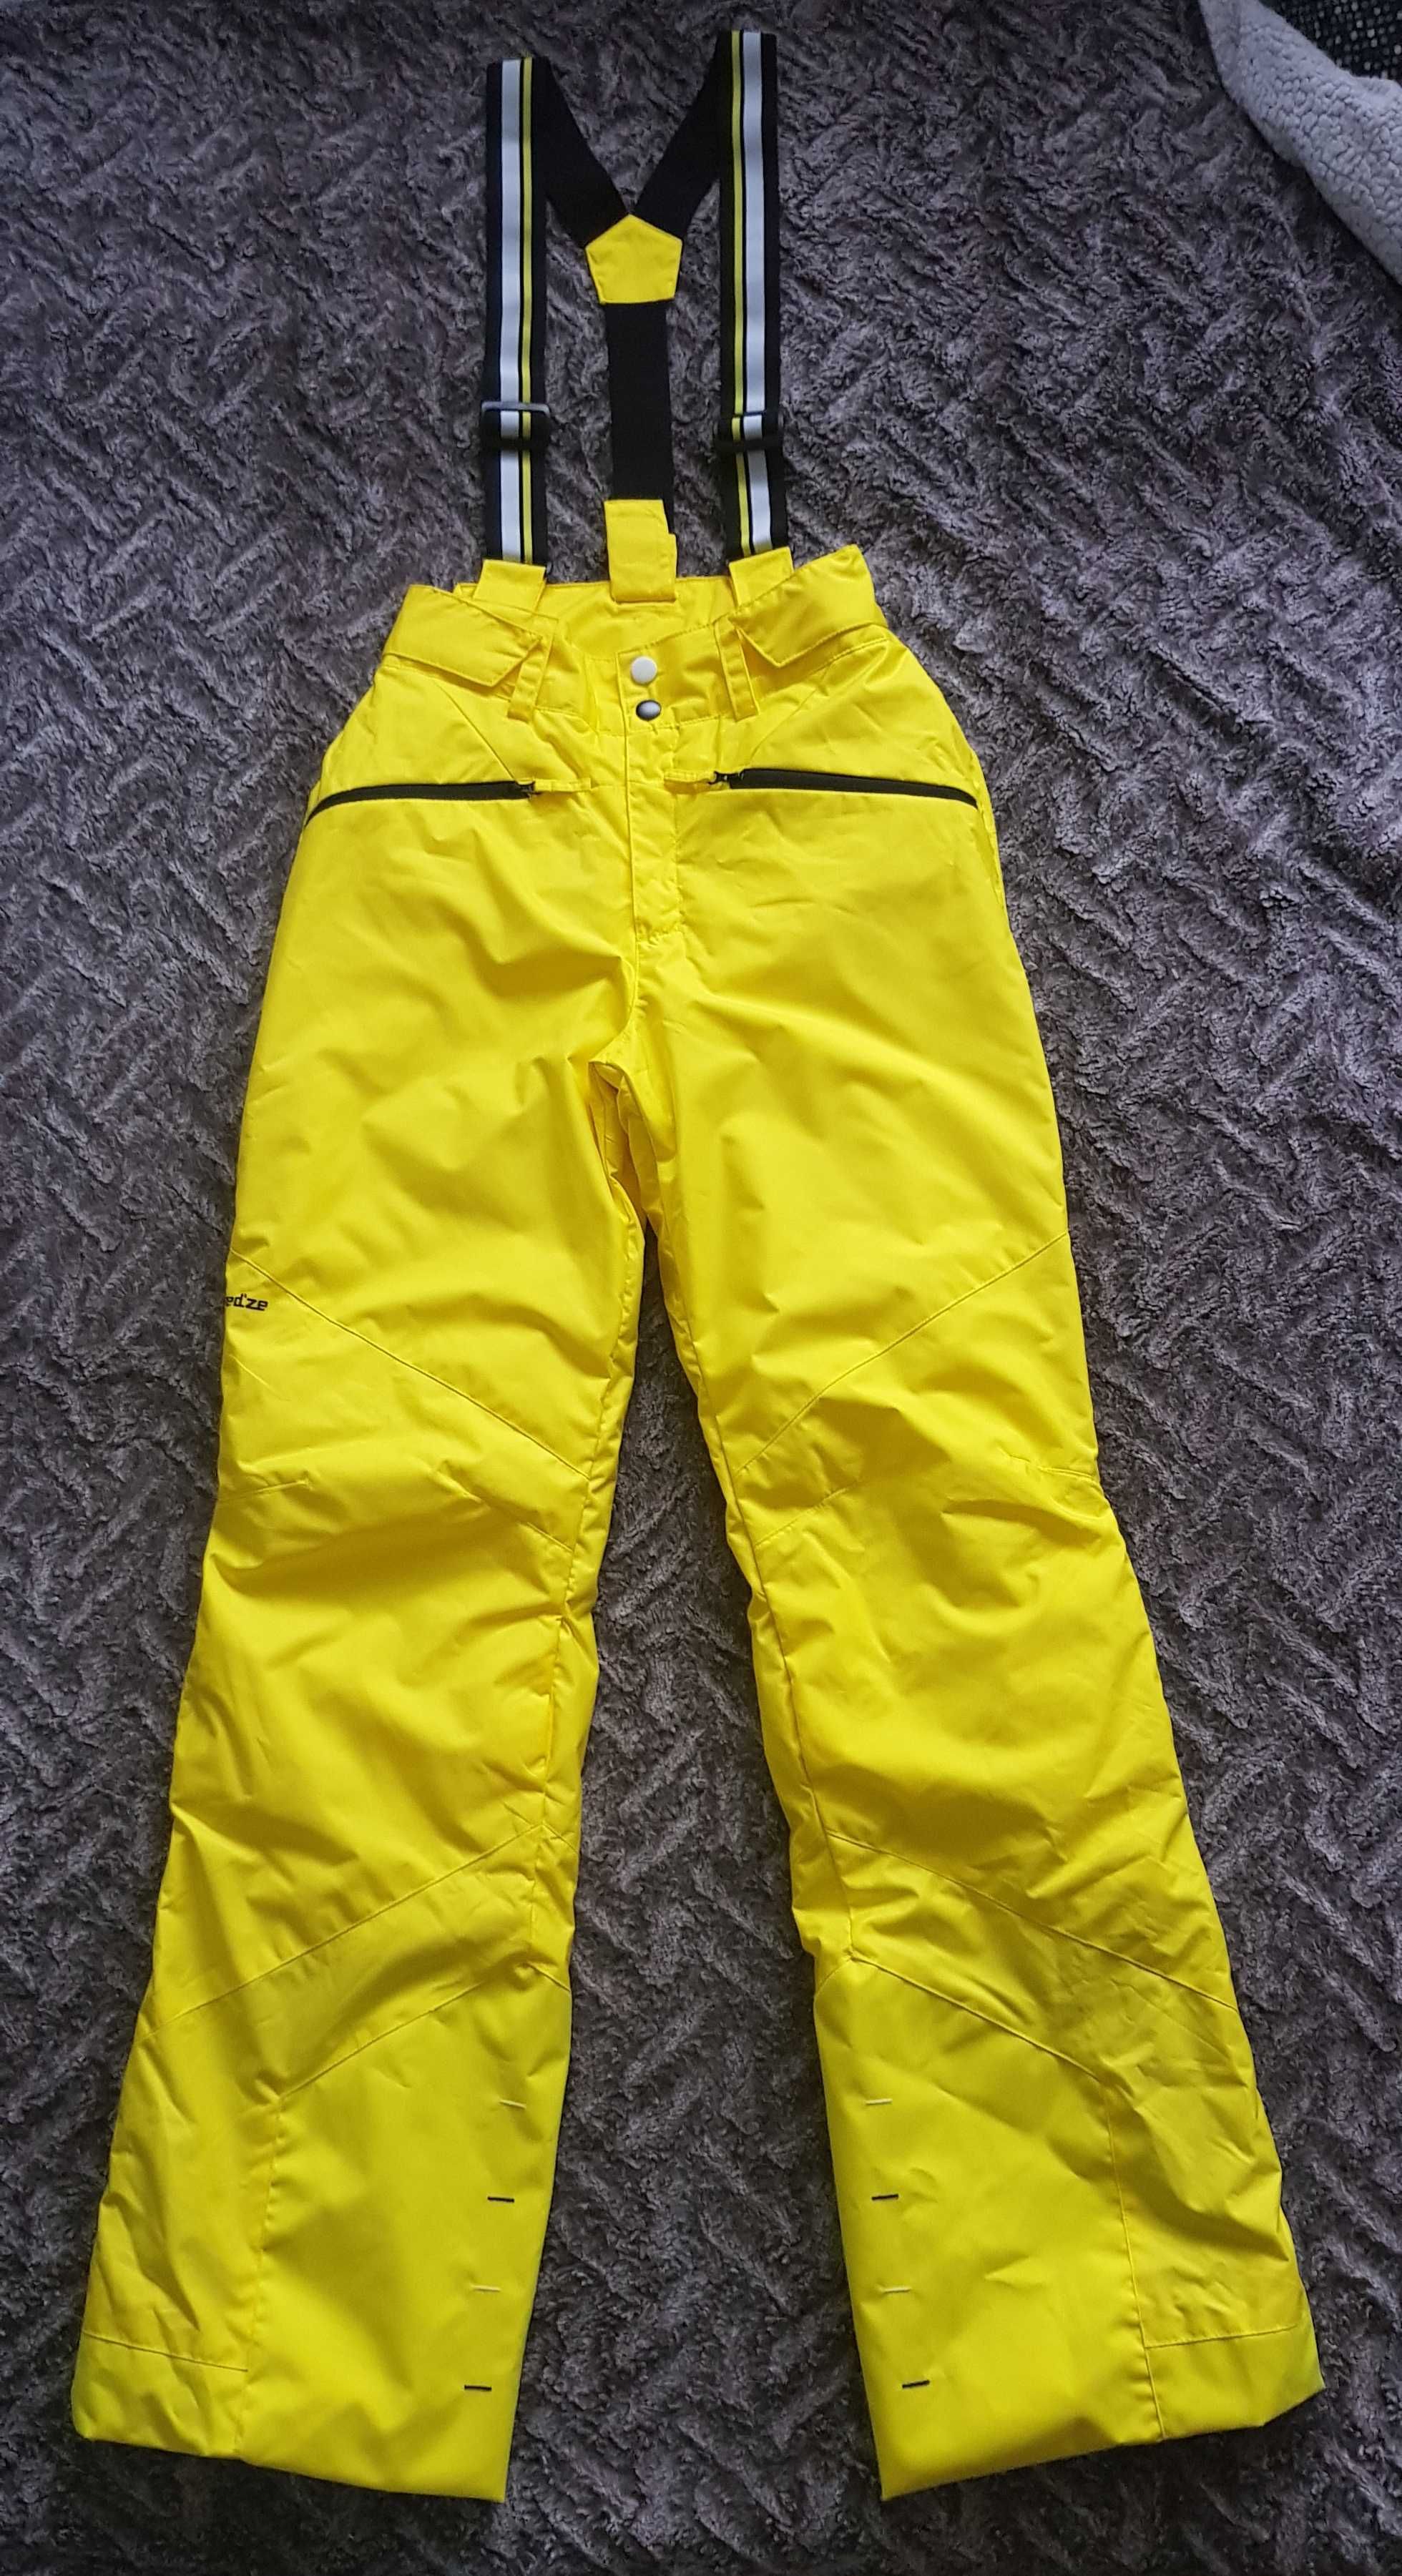 Spodnie narciarskie damskie, rozmiar S/36, marka Wedze